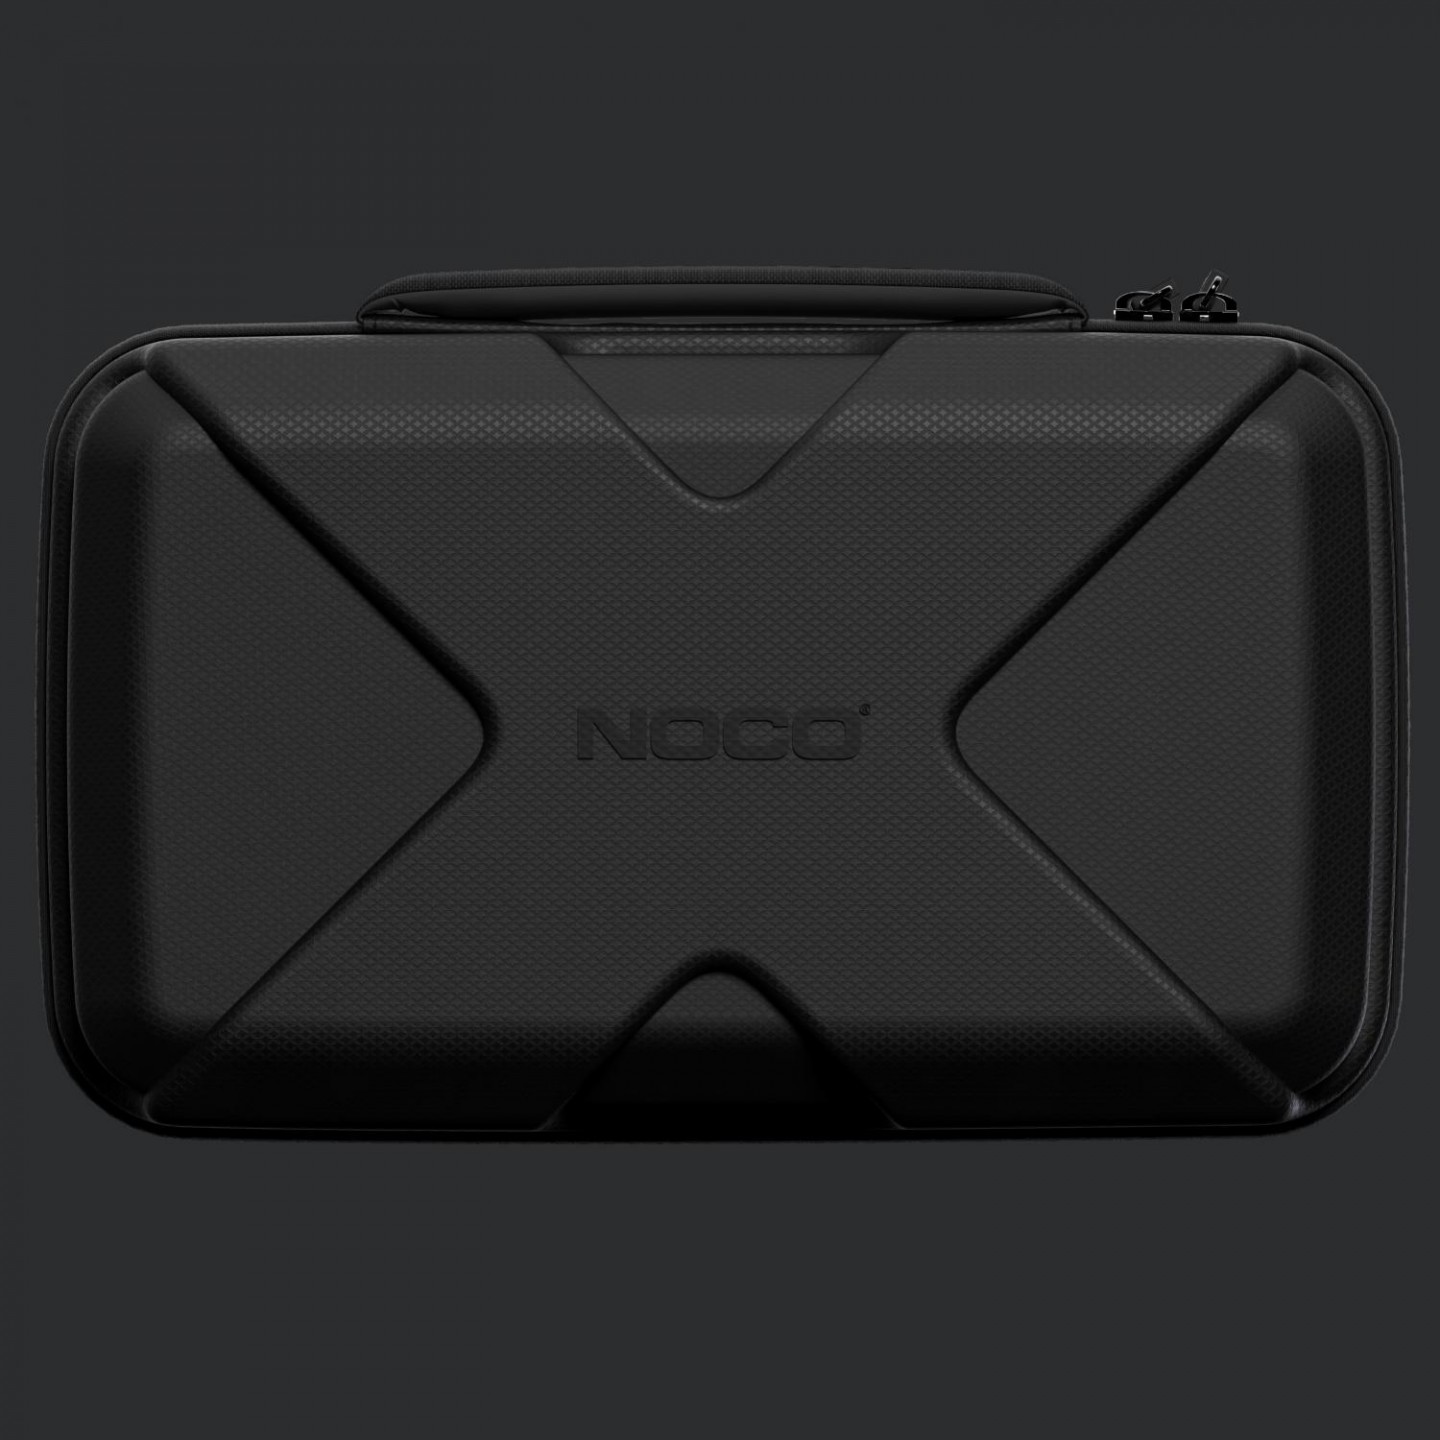 NOCO GBC102 iekārtas GBX55 aizsargsoma